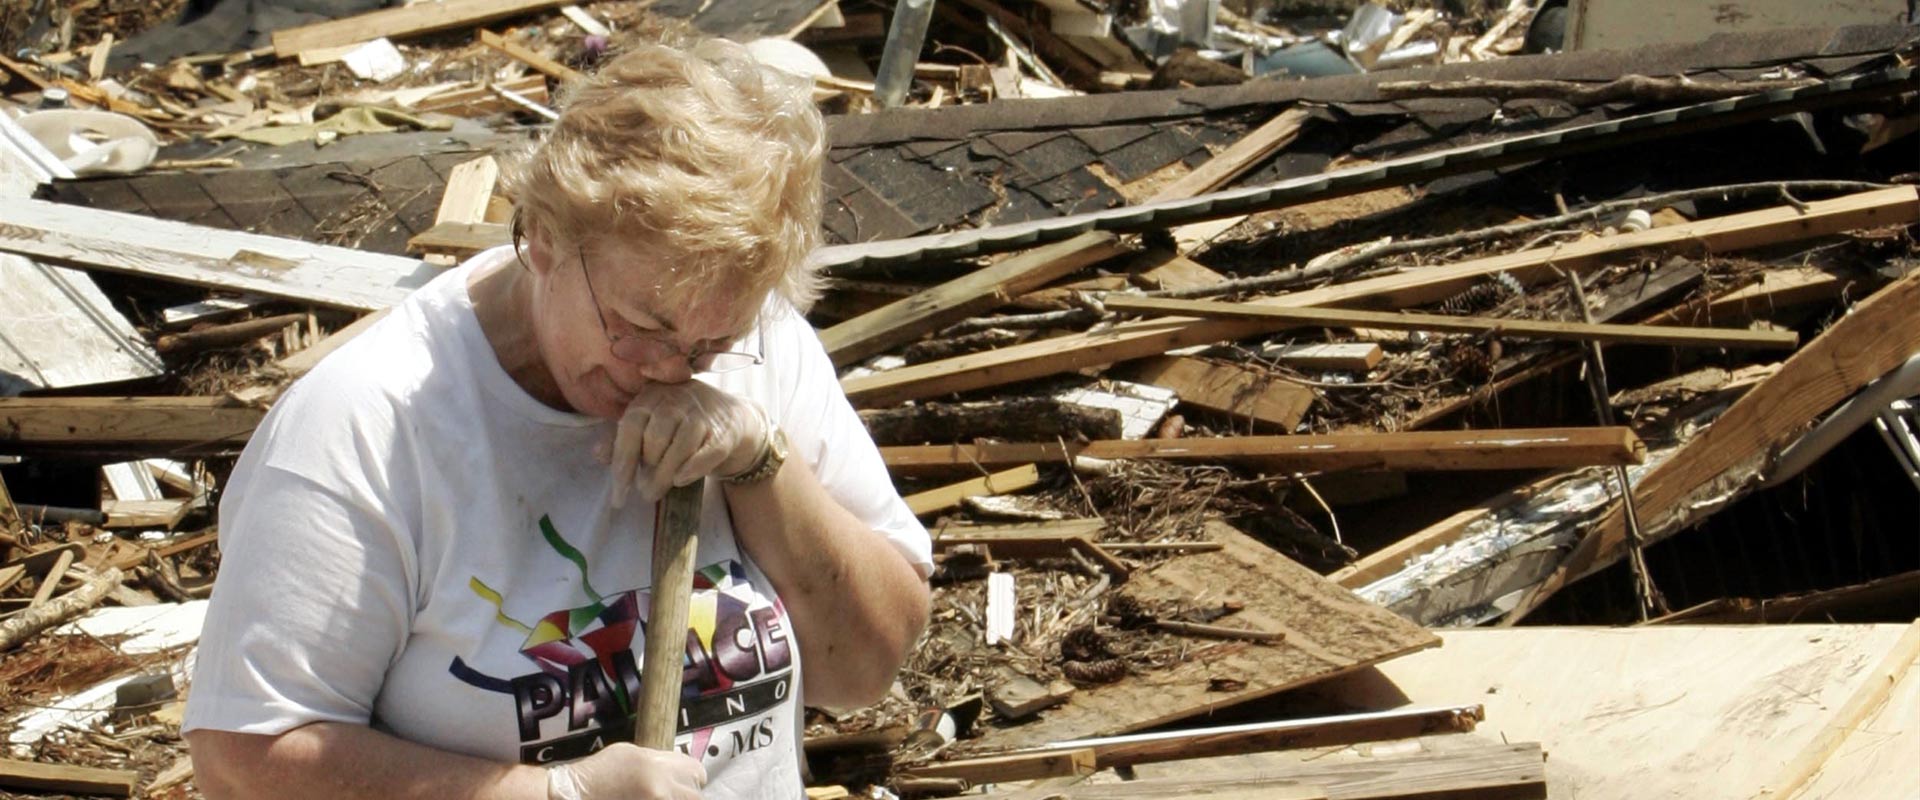 אישה בוכה על הרס ביתה אחרי הוריקן קתרינה / צילום: רויטרס